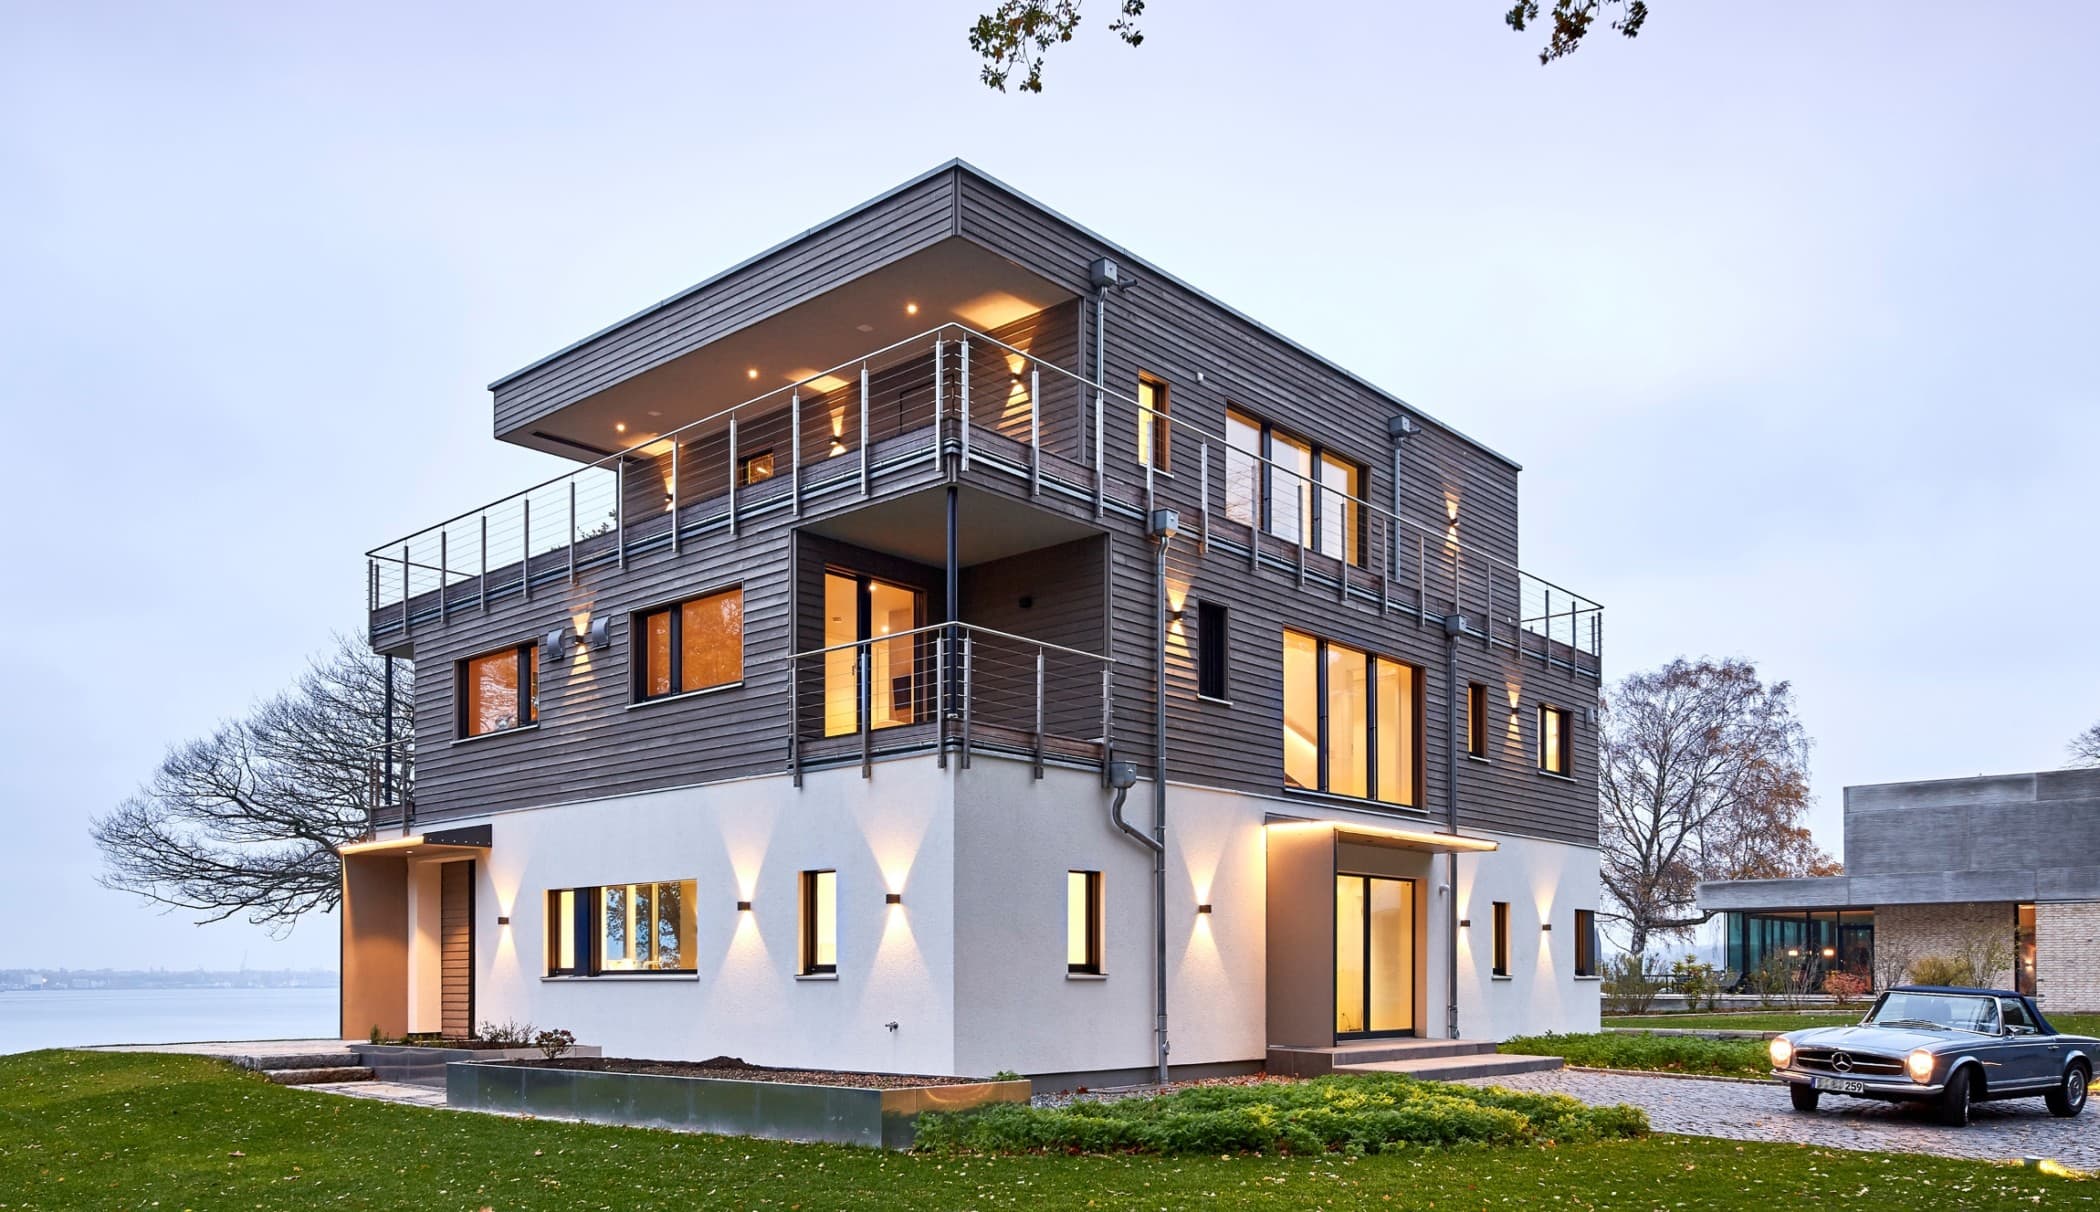 Bauhaus Stadtvilla modern mit Flachdach Architektur & Holz Putz Fassade - Haus bauen Ideen BAUFRITZ Architektenhaus MEHRBLICK - HausbauDirekt.de